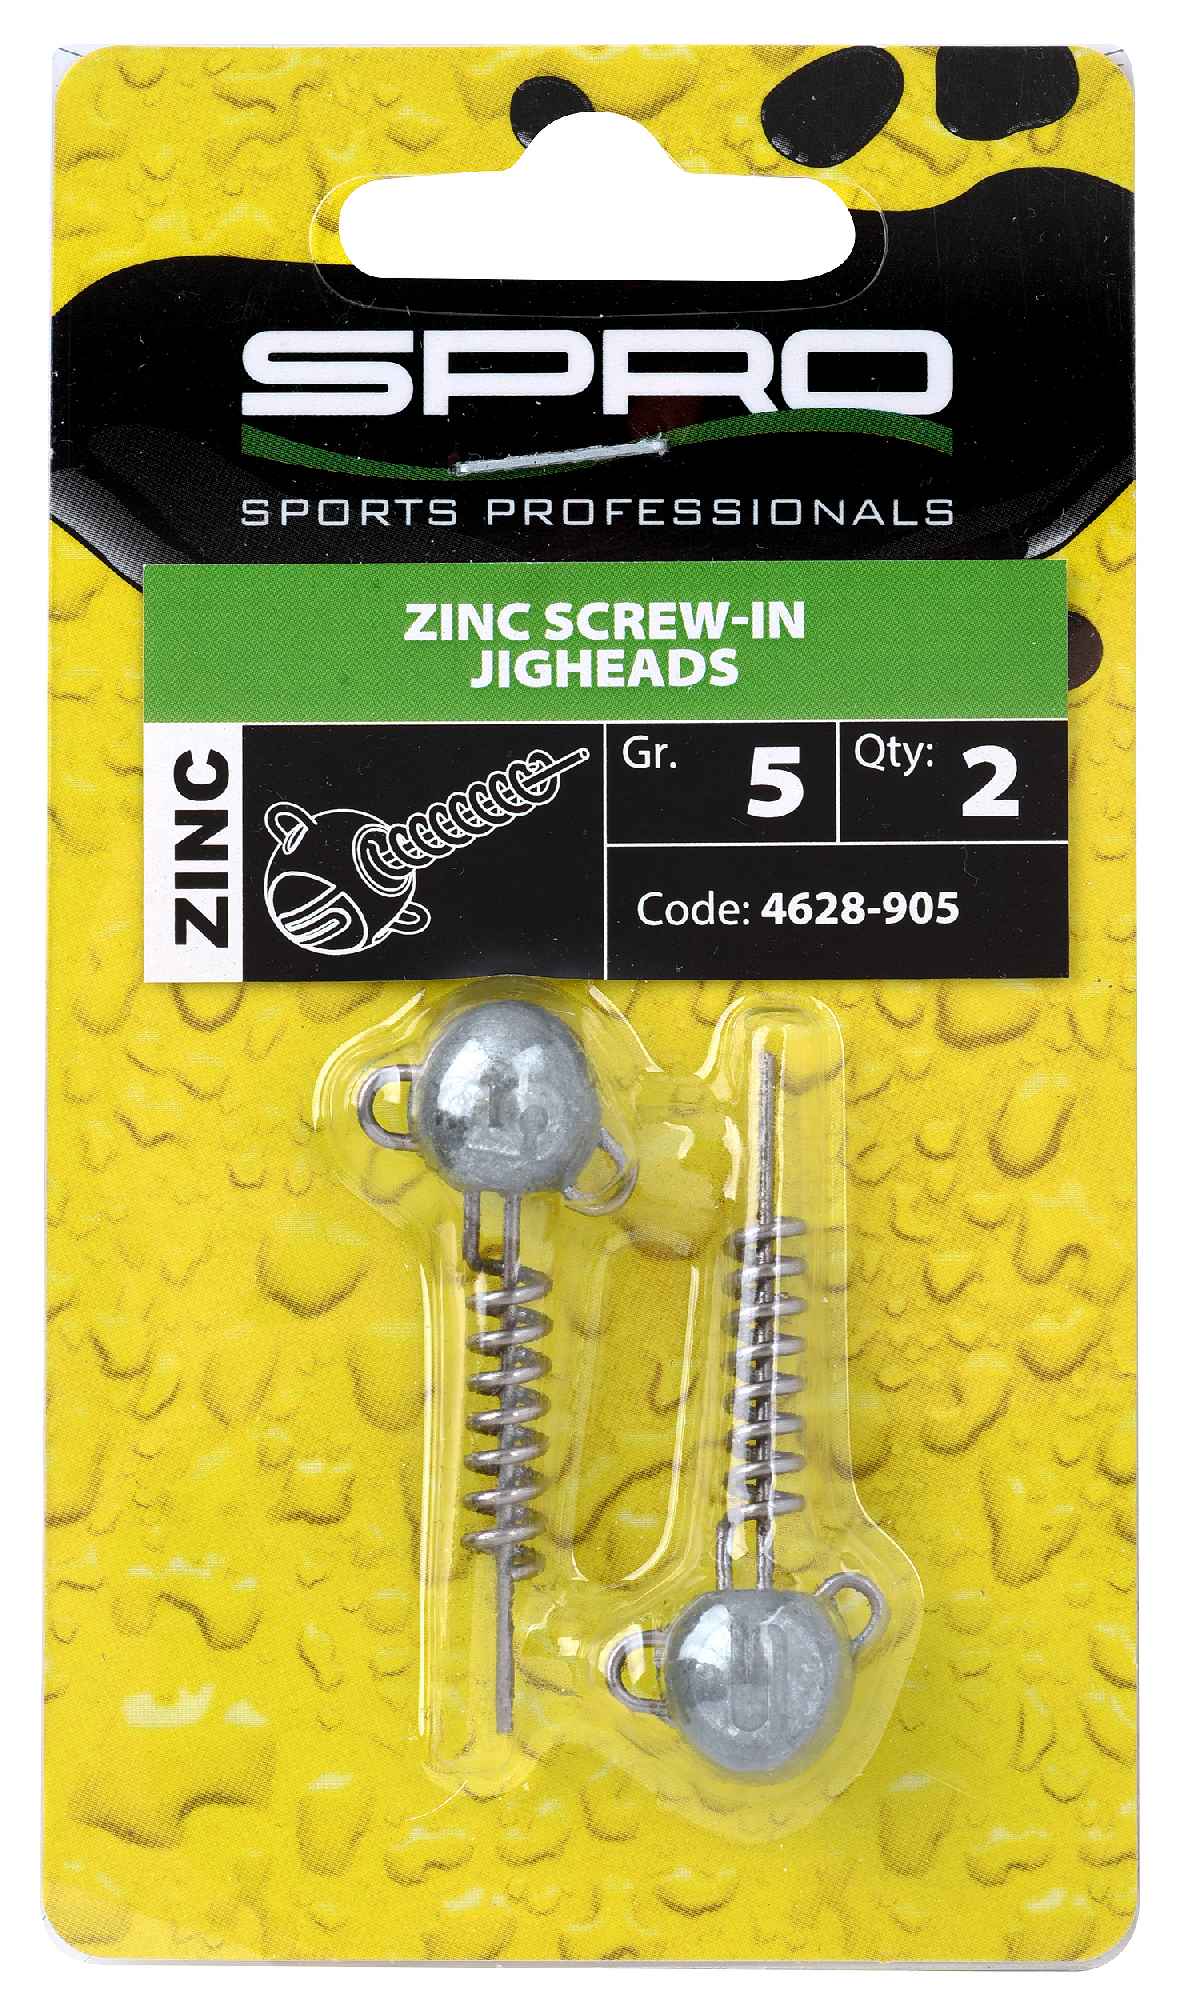 Spro Zinc Screw-In Jigheads 5 gr 2st.